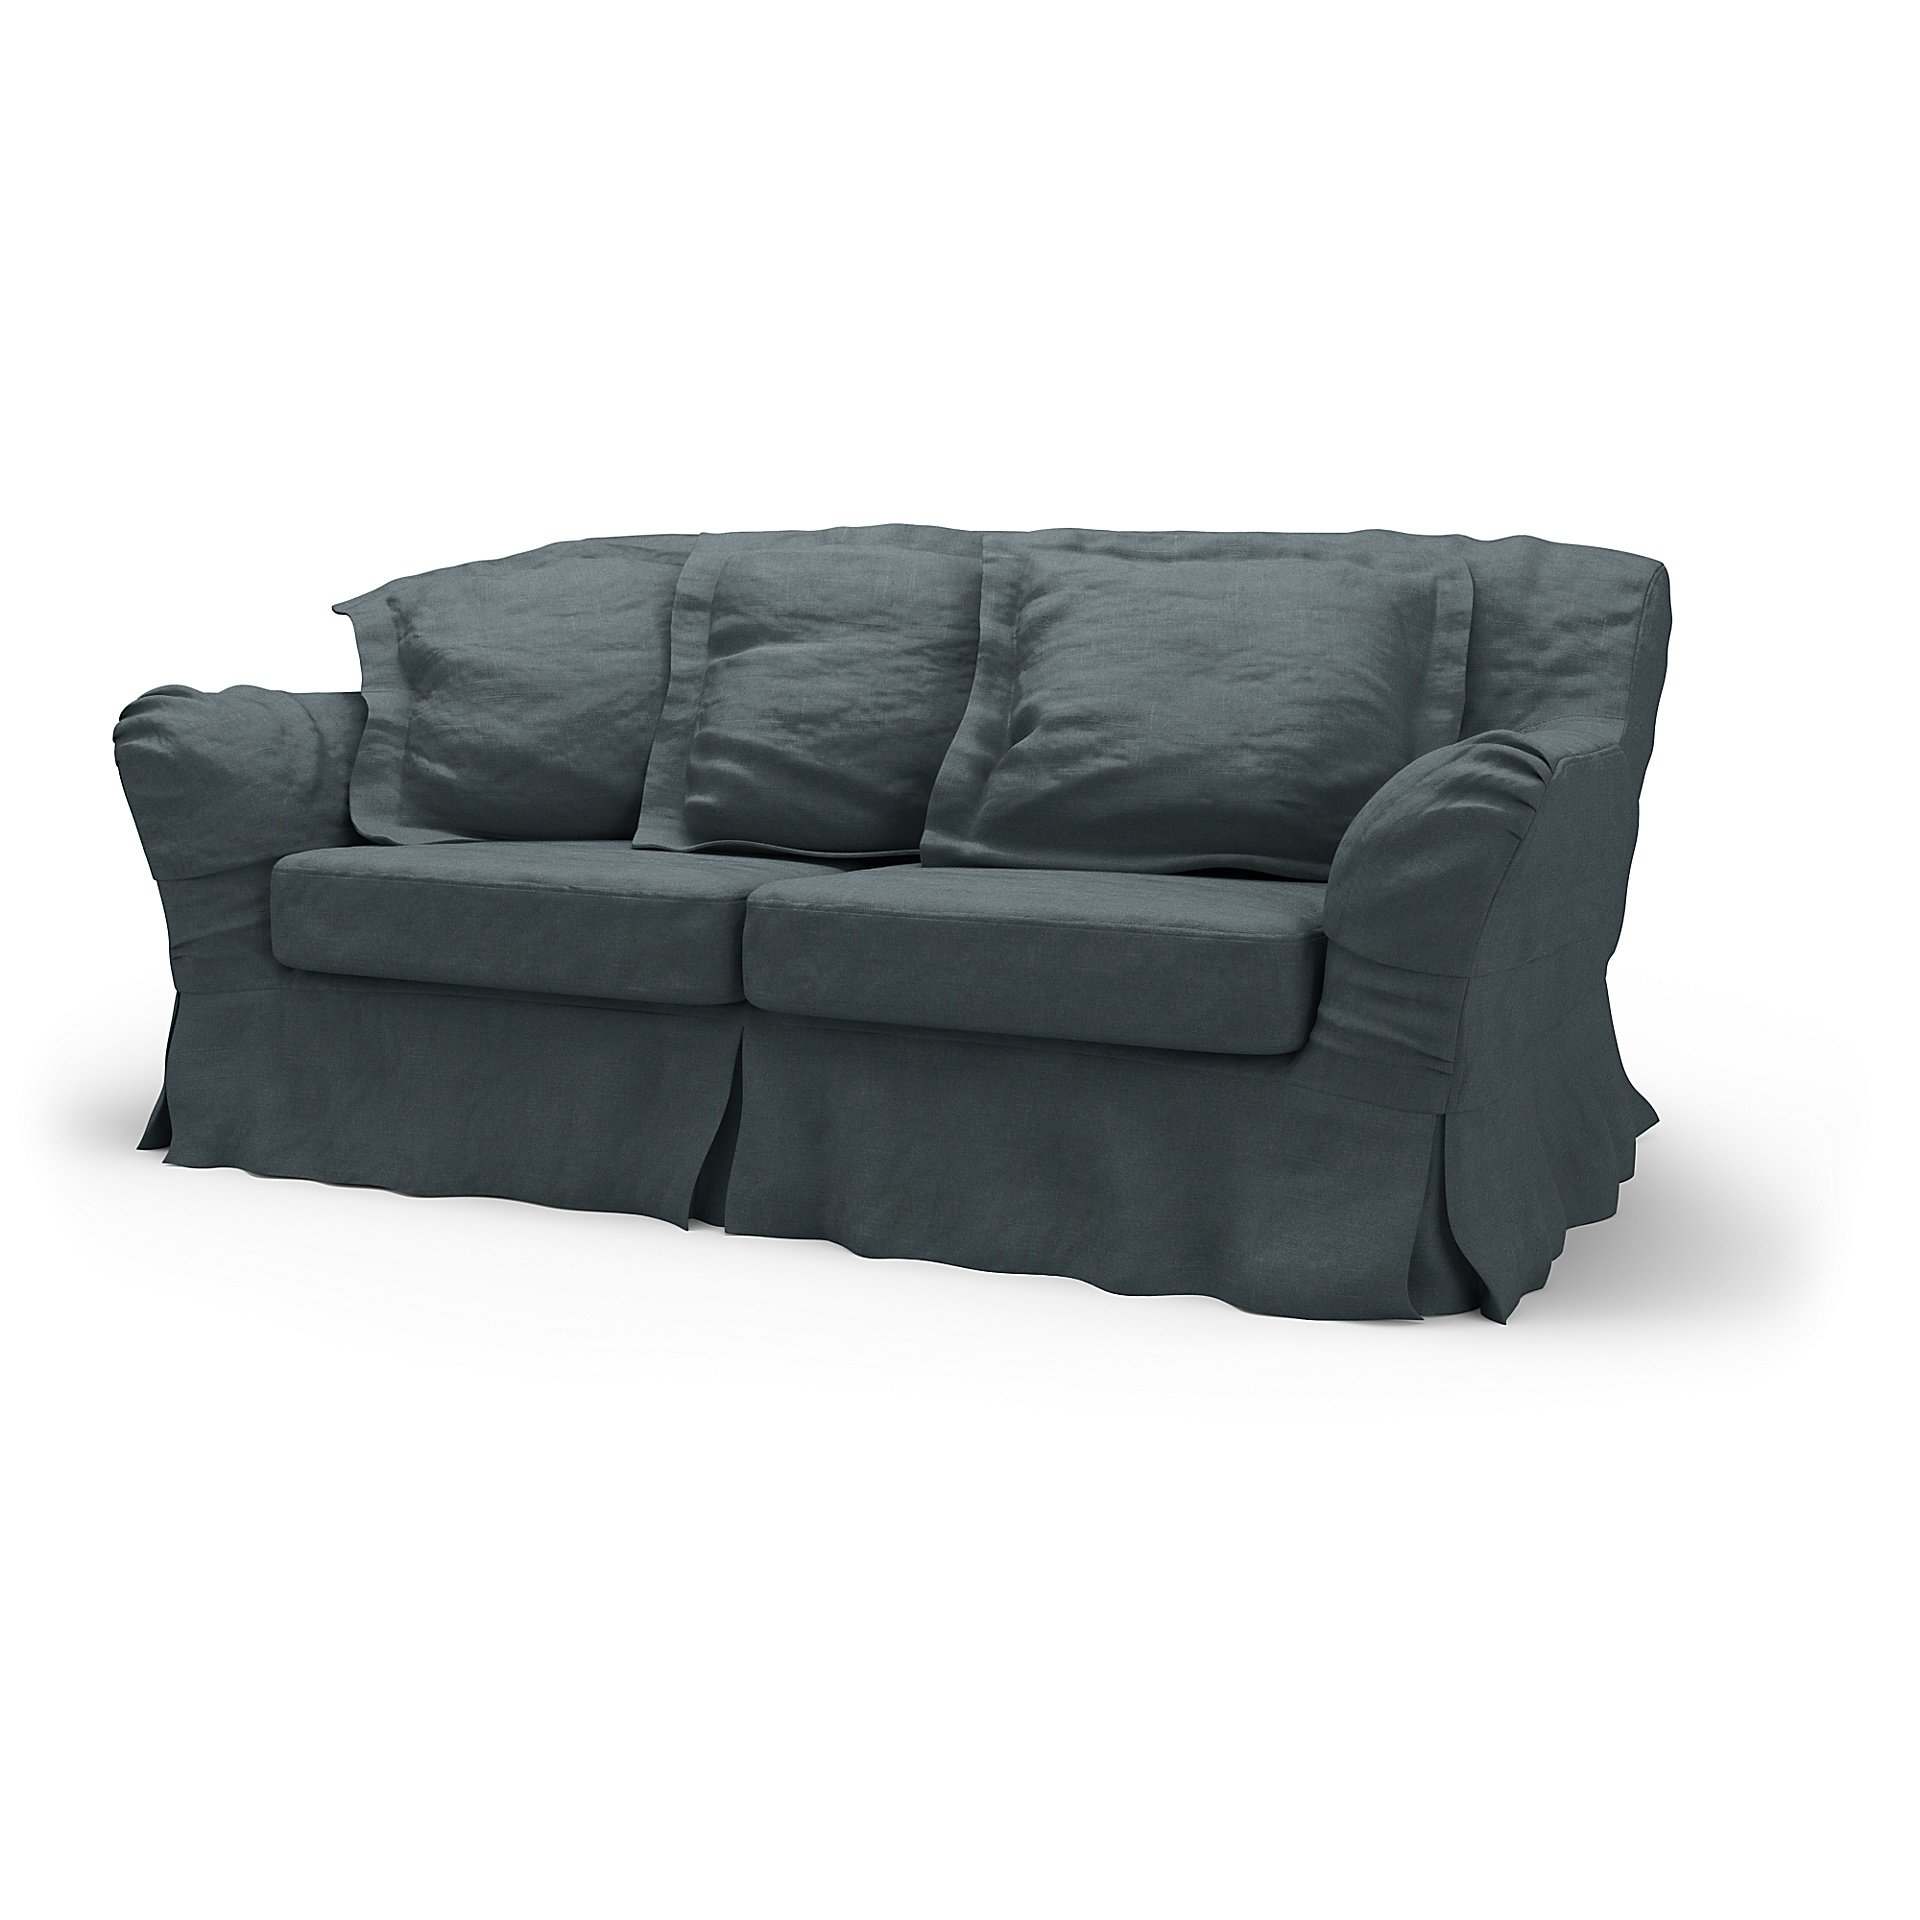 IKEA - Tomelilla 2 Seater Sofa Cover, Graphite Grey, Linen - Bemz